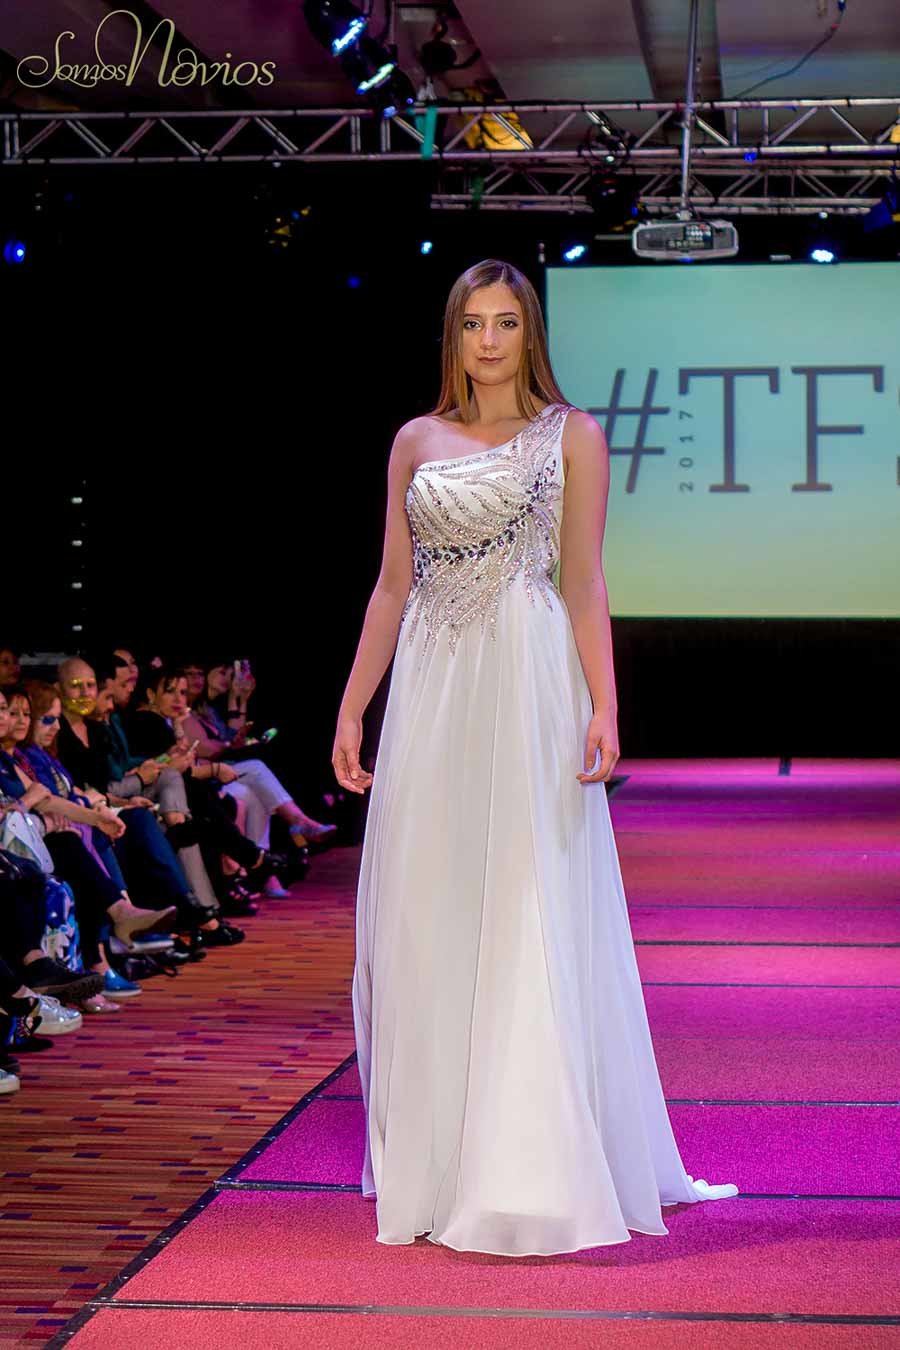 modelo desfilando en la pasarela del temuco fashion show con Vestido de novia escote asimétrico con aplicaciones bordadas